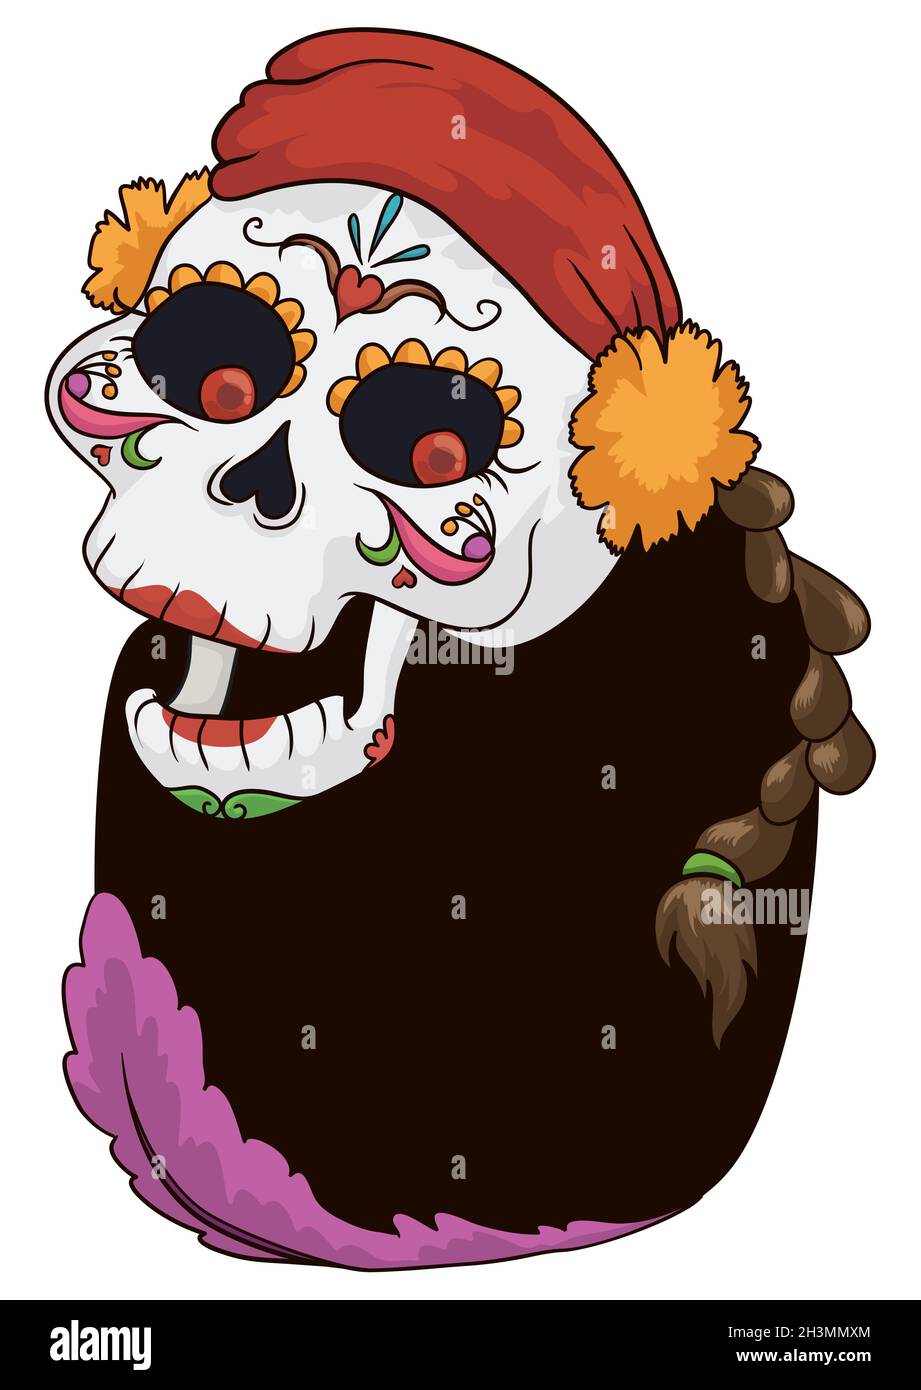 Fröhlicher Catrina-Charakter mit Bandana und Ringelblume auf dem Kopf, geflochtenen Haaren und traditionellen mexikanischen Dekorationen auf dem Gesicht. Stock Vektor